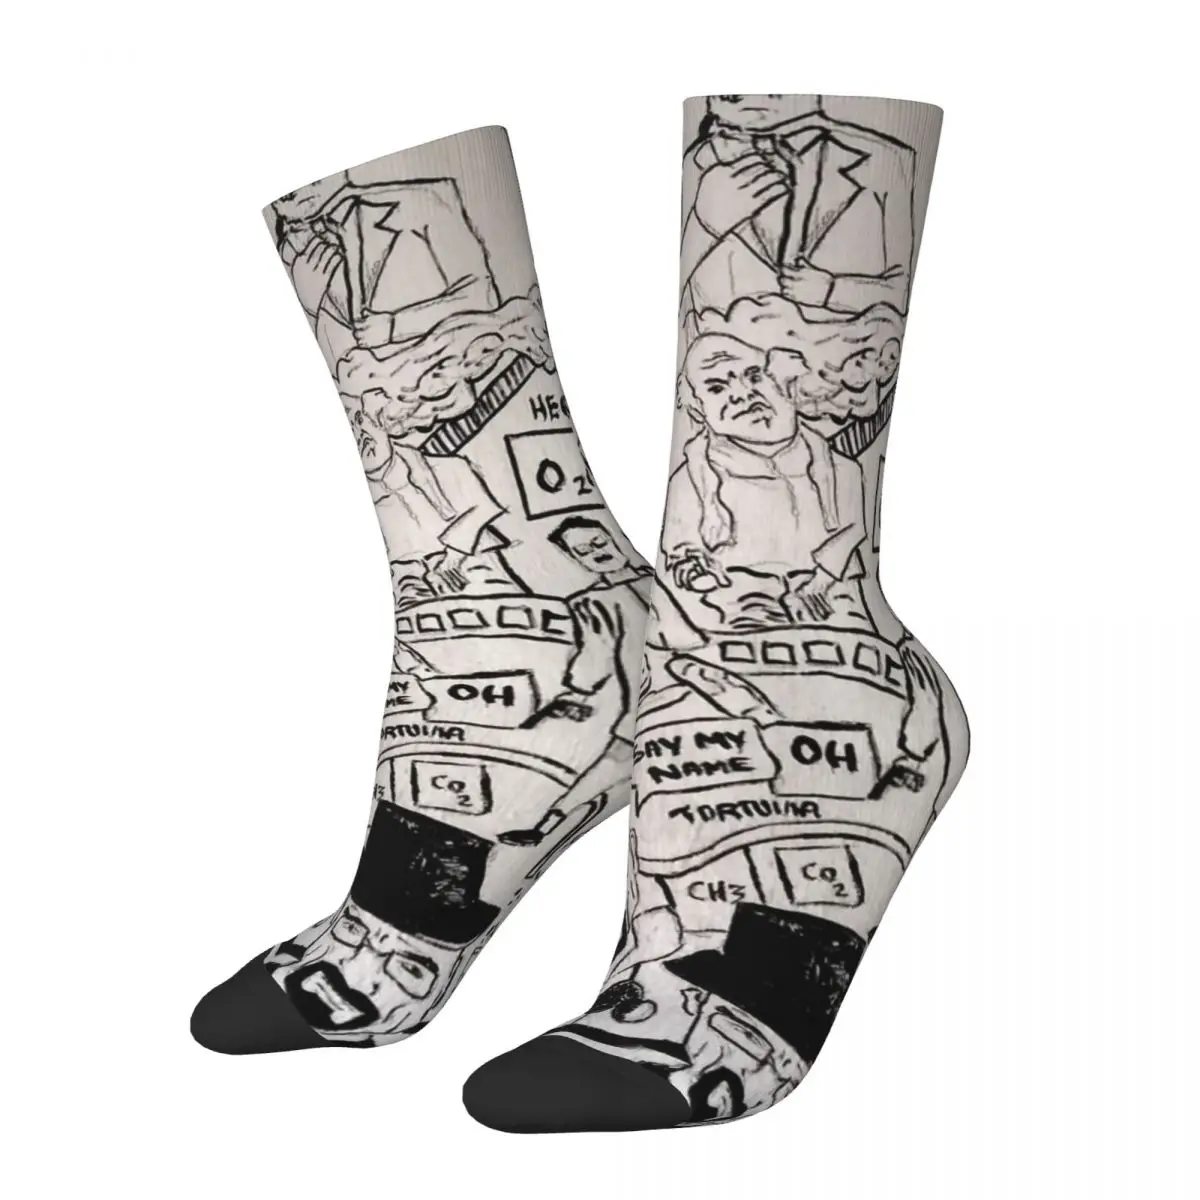 

Hip Hop Vintage Doodle Crazy Men's Compression Socks Unisex Breaking Bad Street Style Pattern Printed Funny Novelty Crew Sock